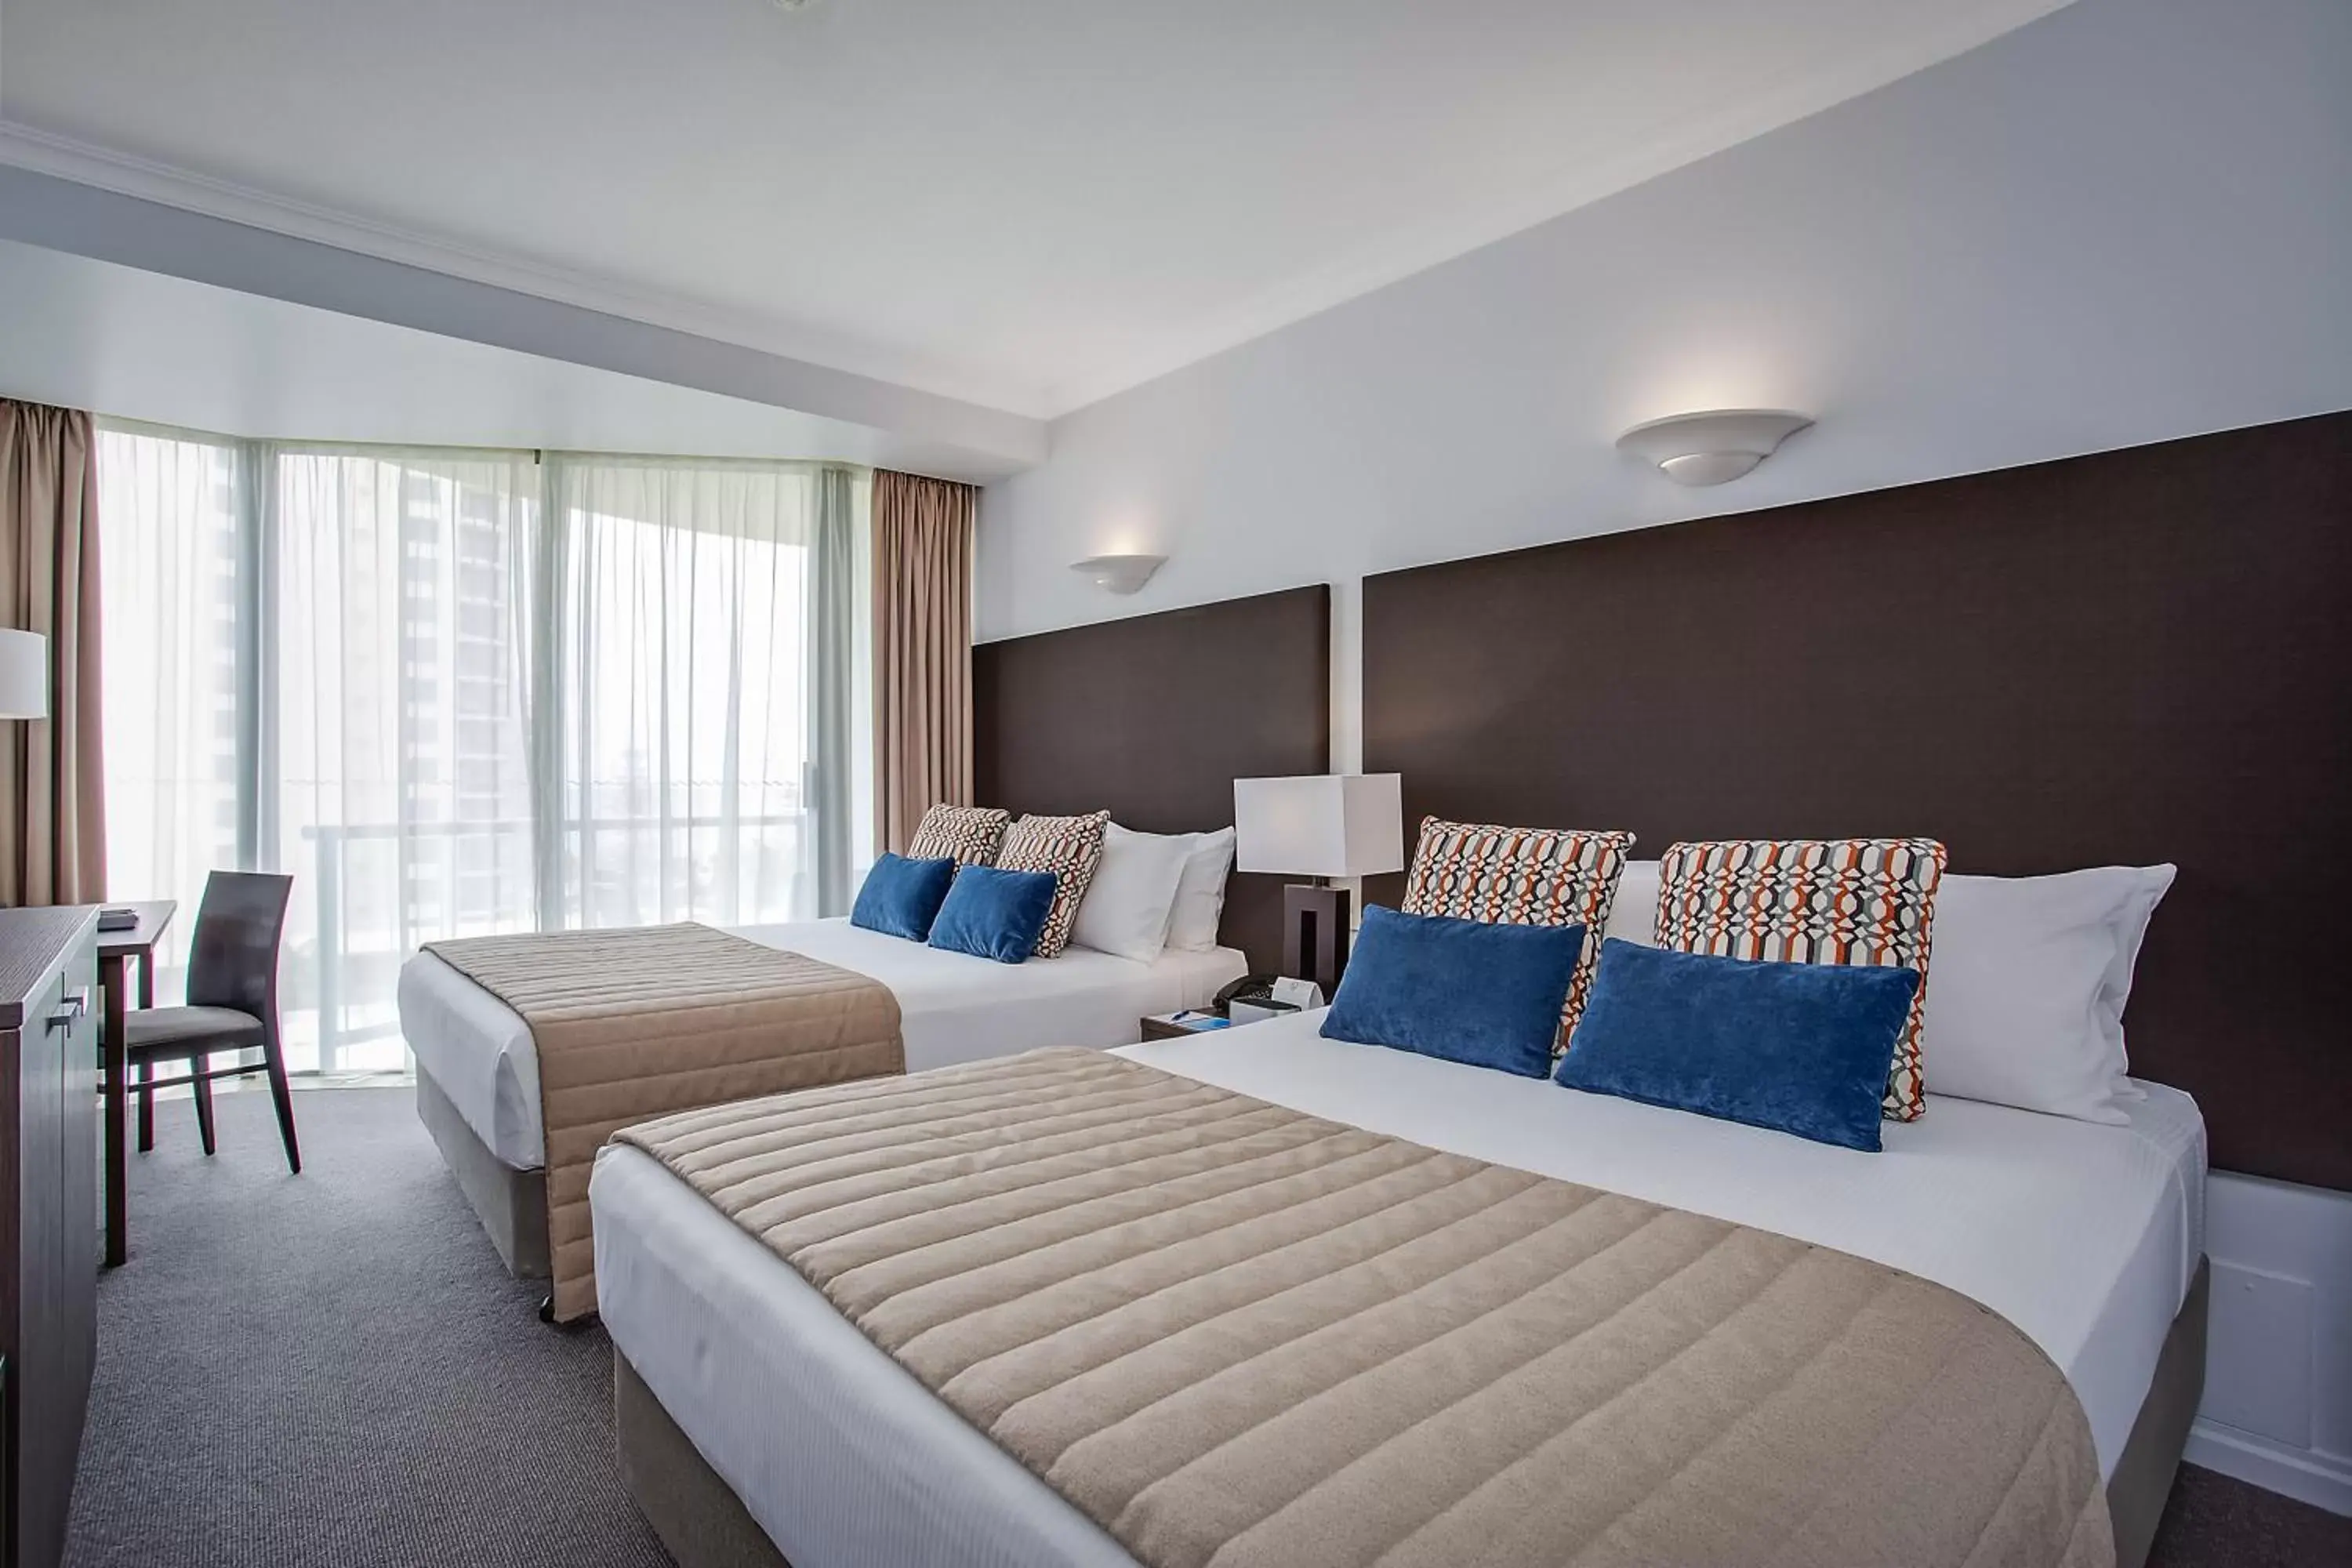 Bedroom, Room Photo in Mantra Legends Hotel